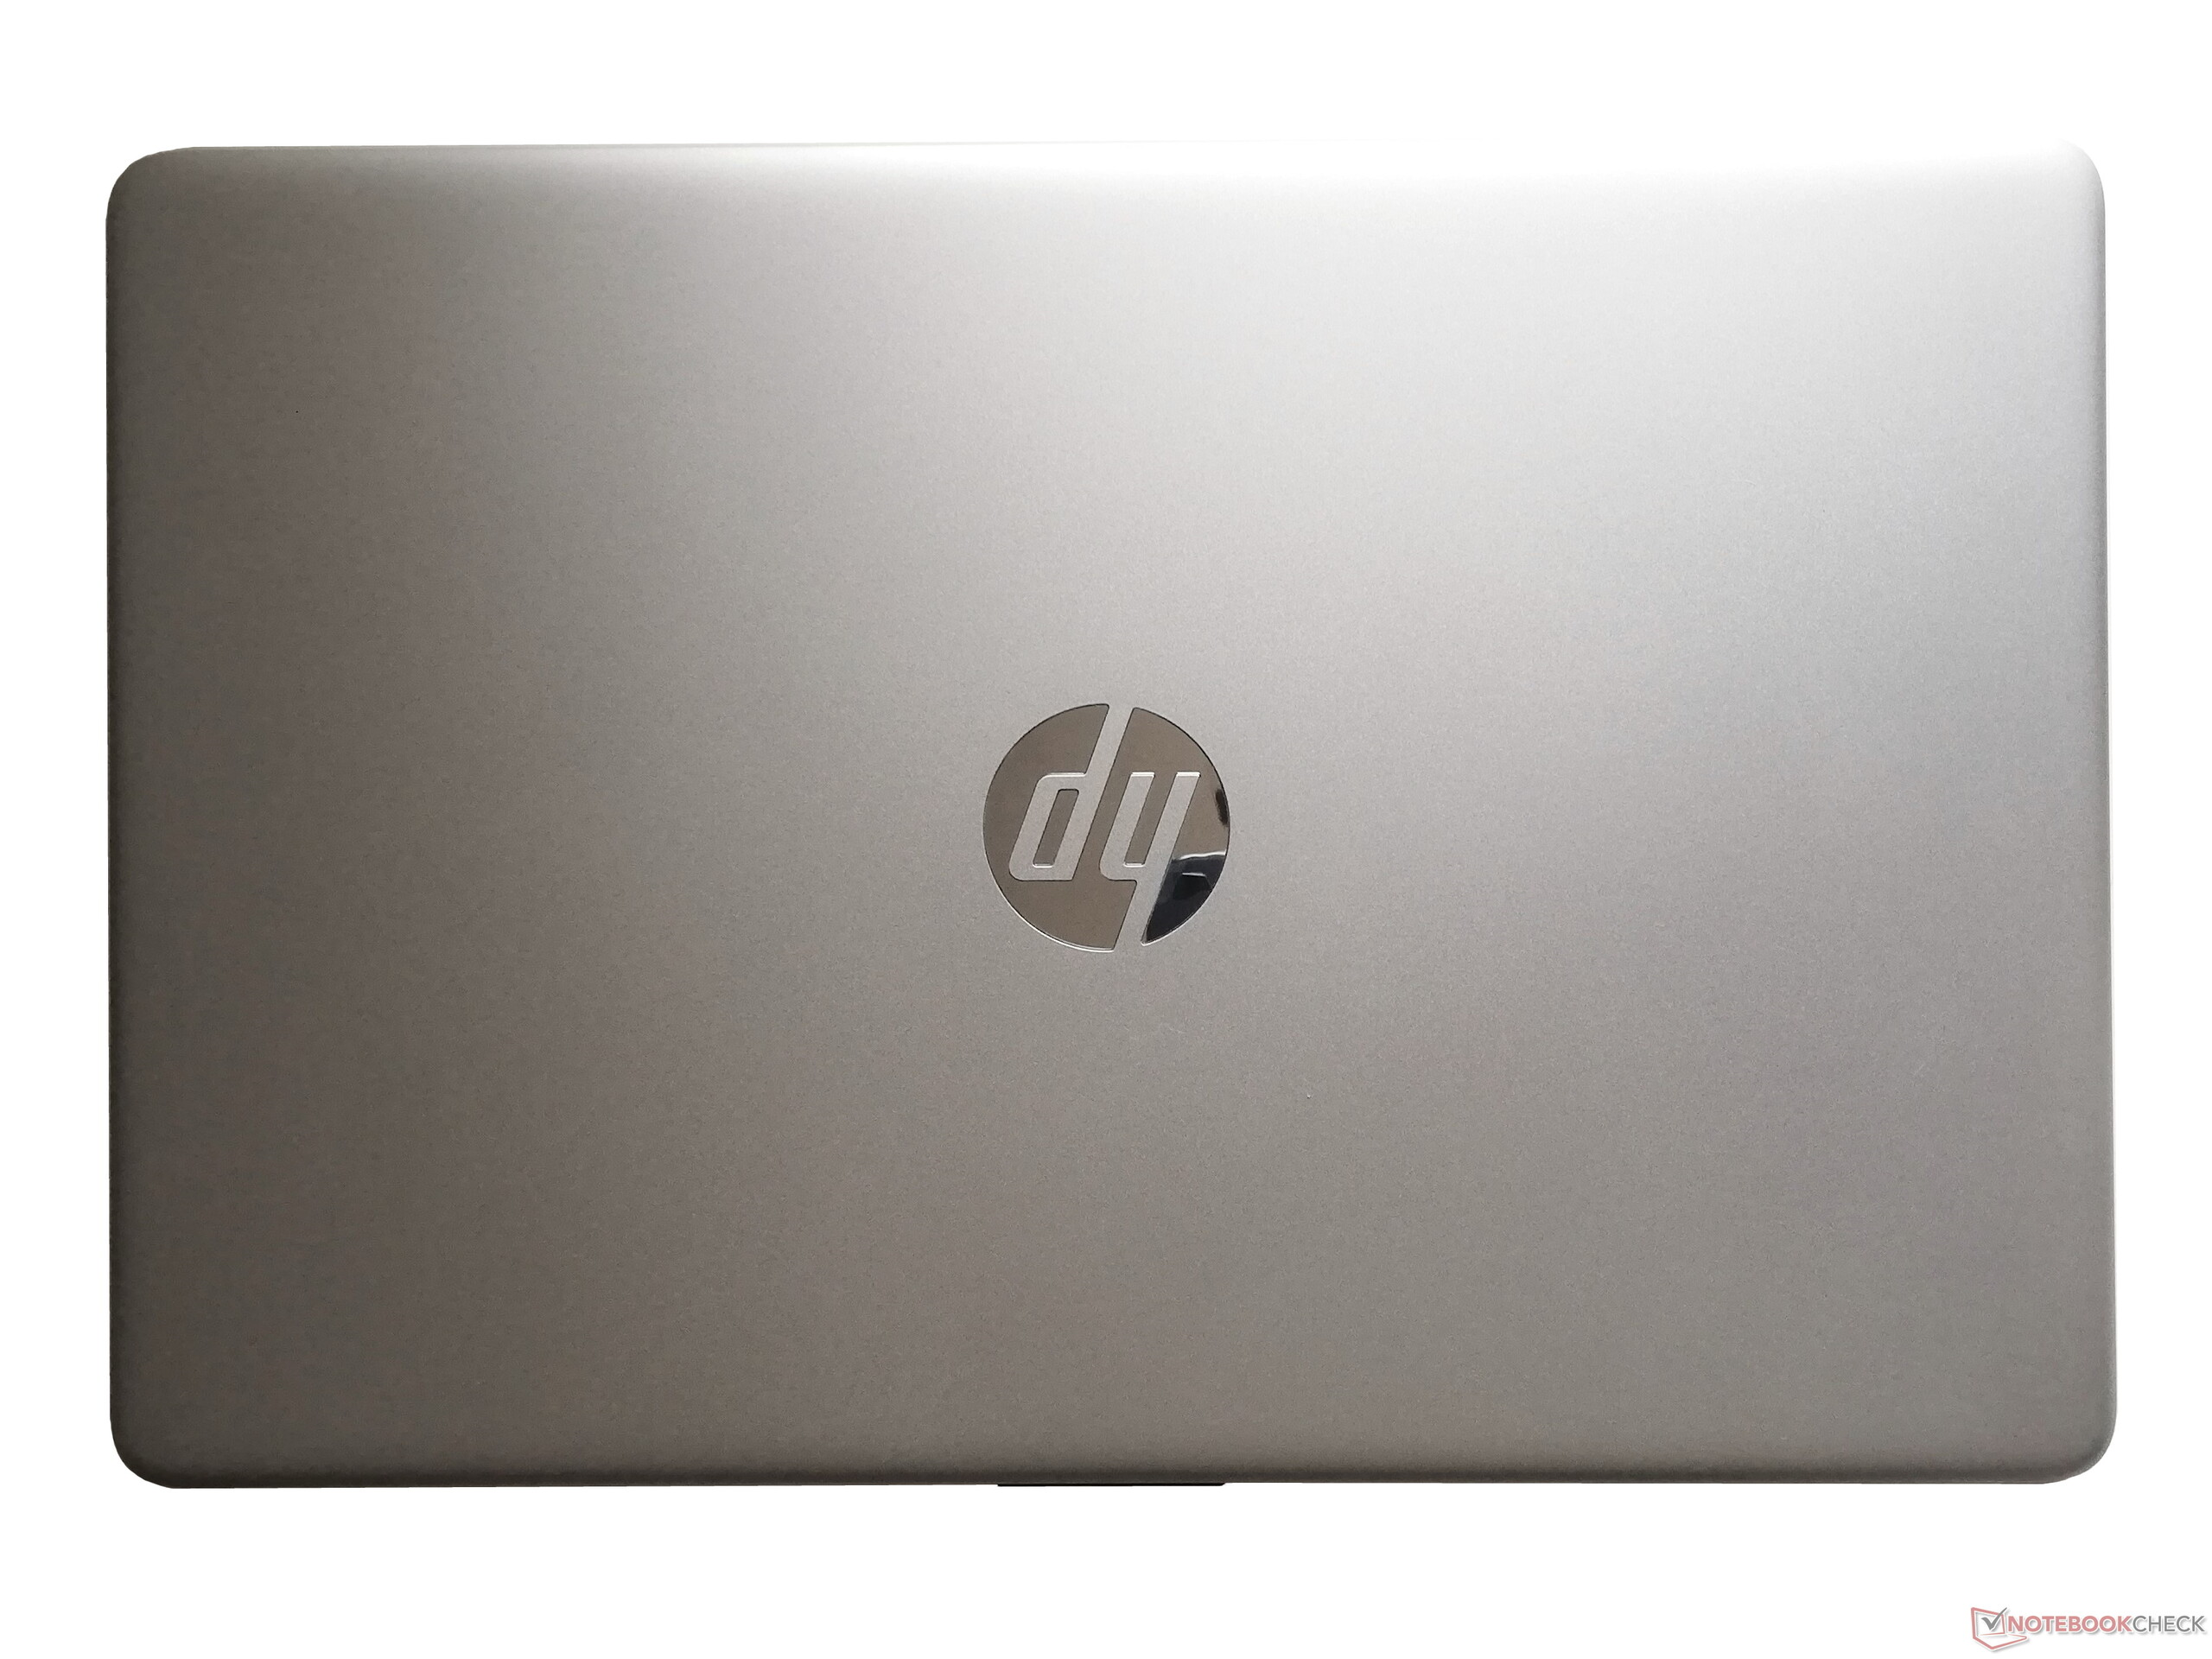 HP Notebook 15s Laptop im Test: Mit Ice-Lake-CPU und schlankem Design -  Notebookcheck.com Tests